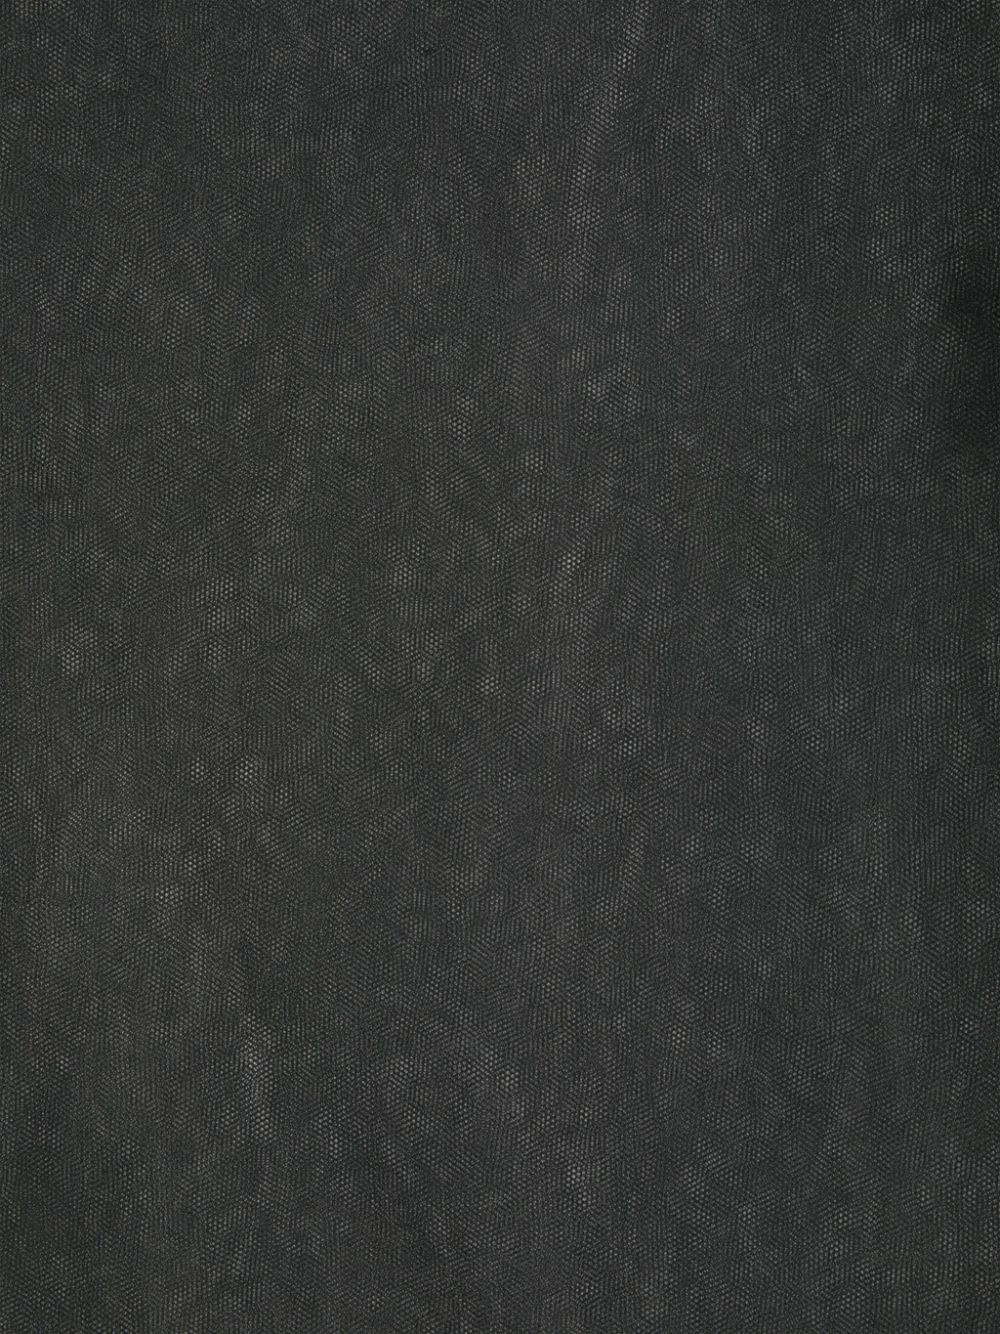 Carine Gilson Sjaal met kant - Zwart